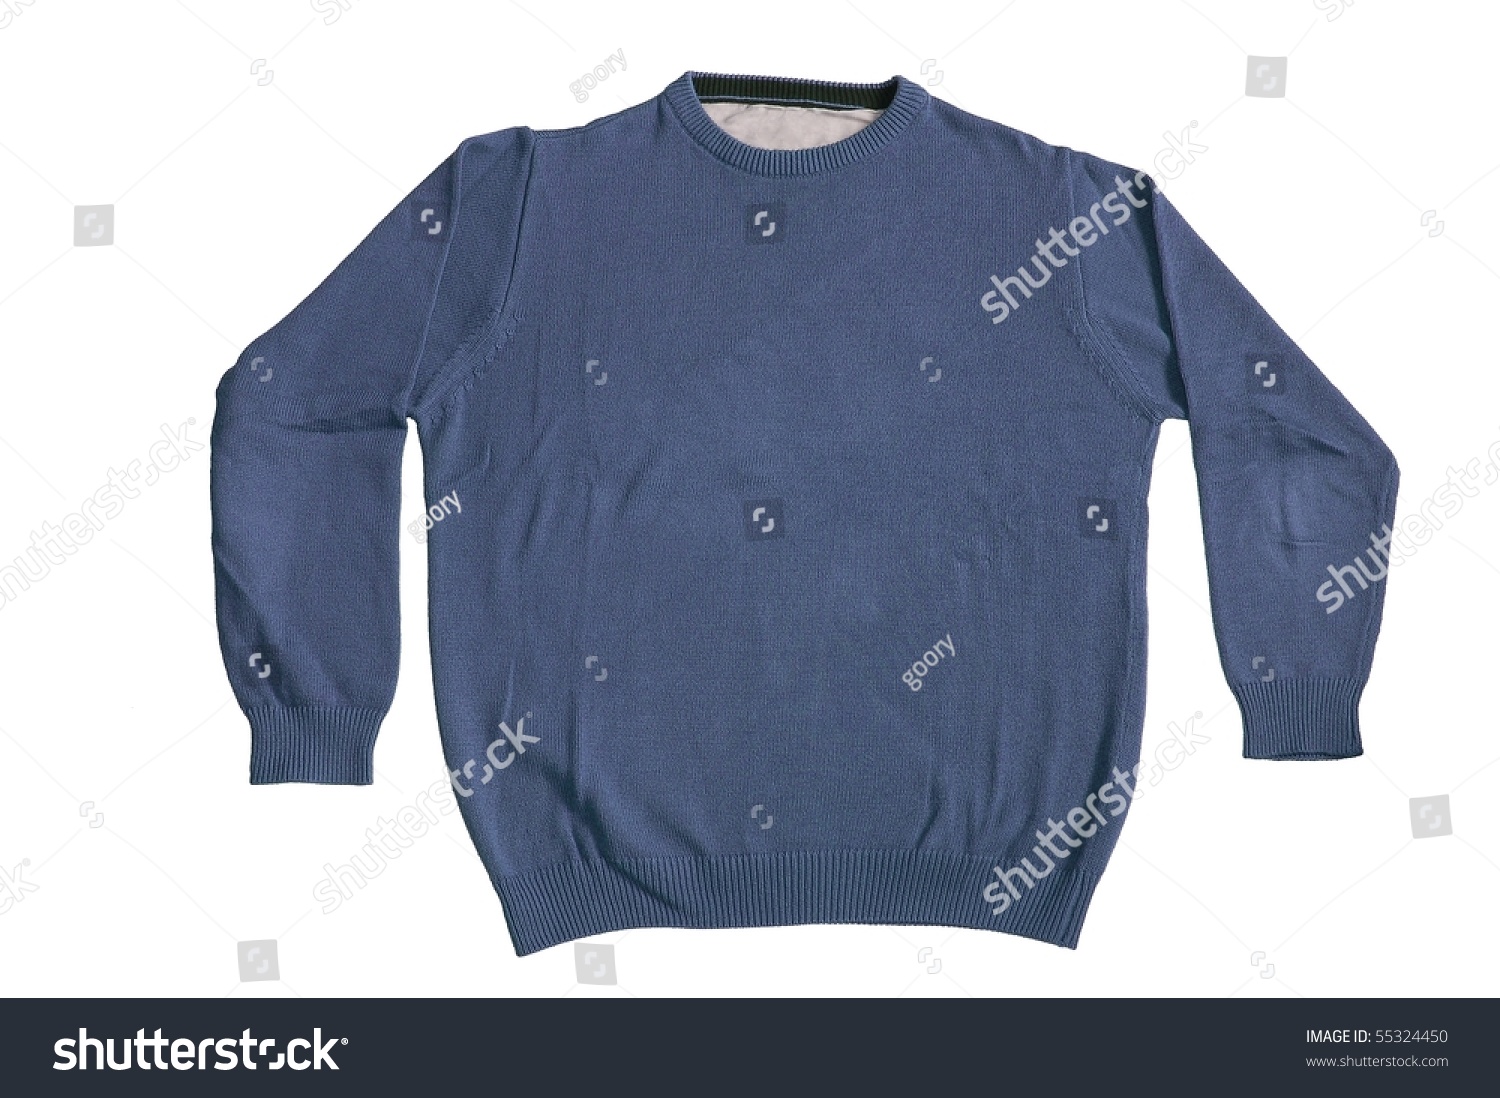 Blue Plain Sweater Isolated On White Background Stock Photo 55324450 ...